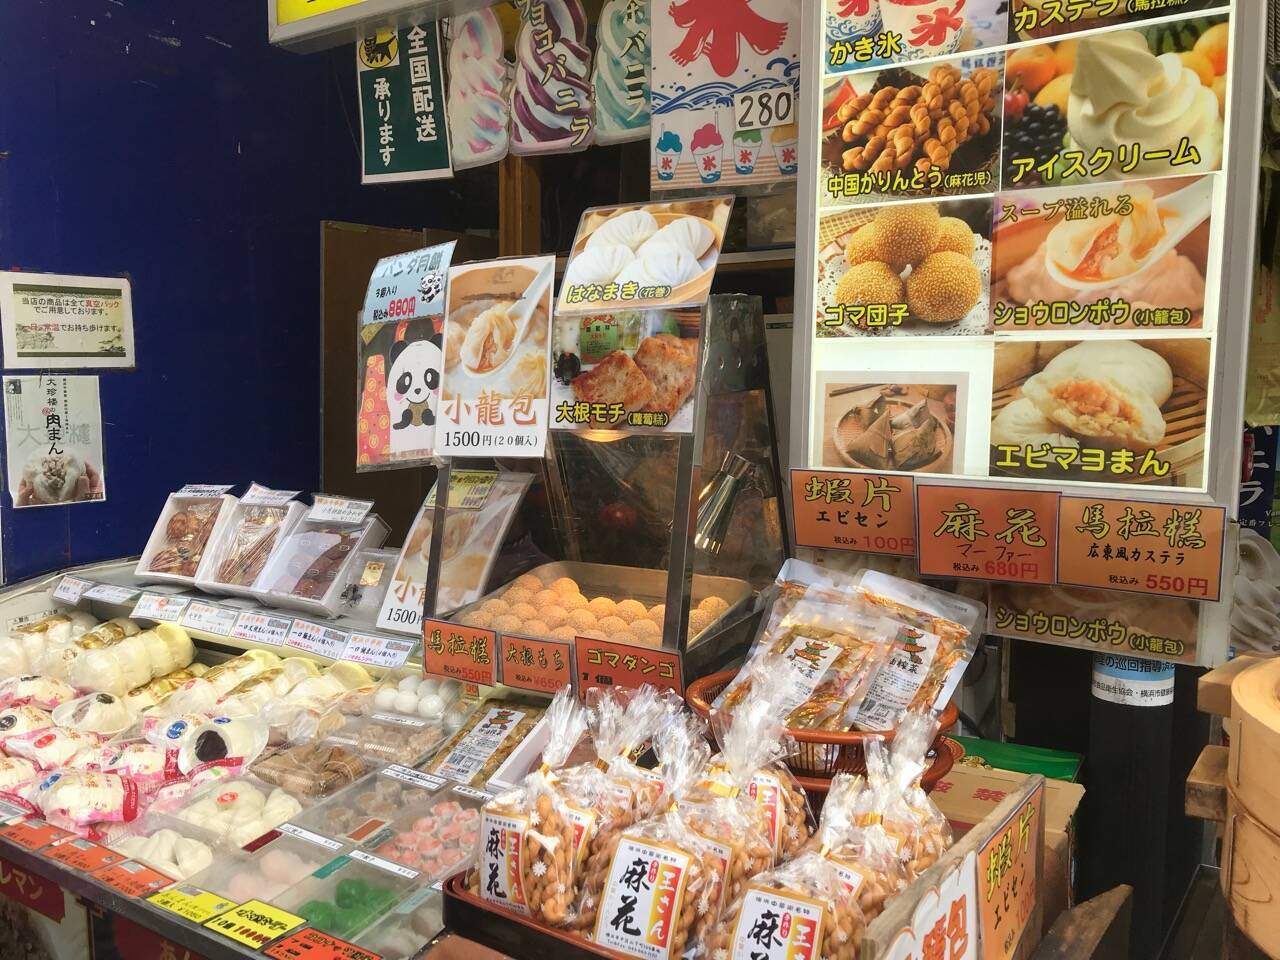 食べて 祈って また食べて大満足 横浜中華街の女性一人食べ歩きが楽しい 19年4月9日 エキサイトニュース